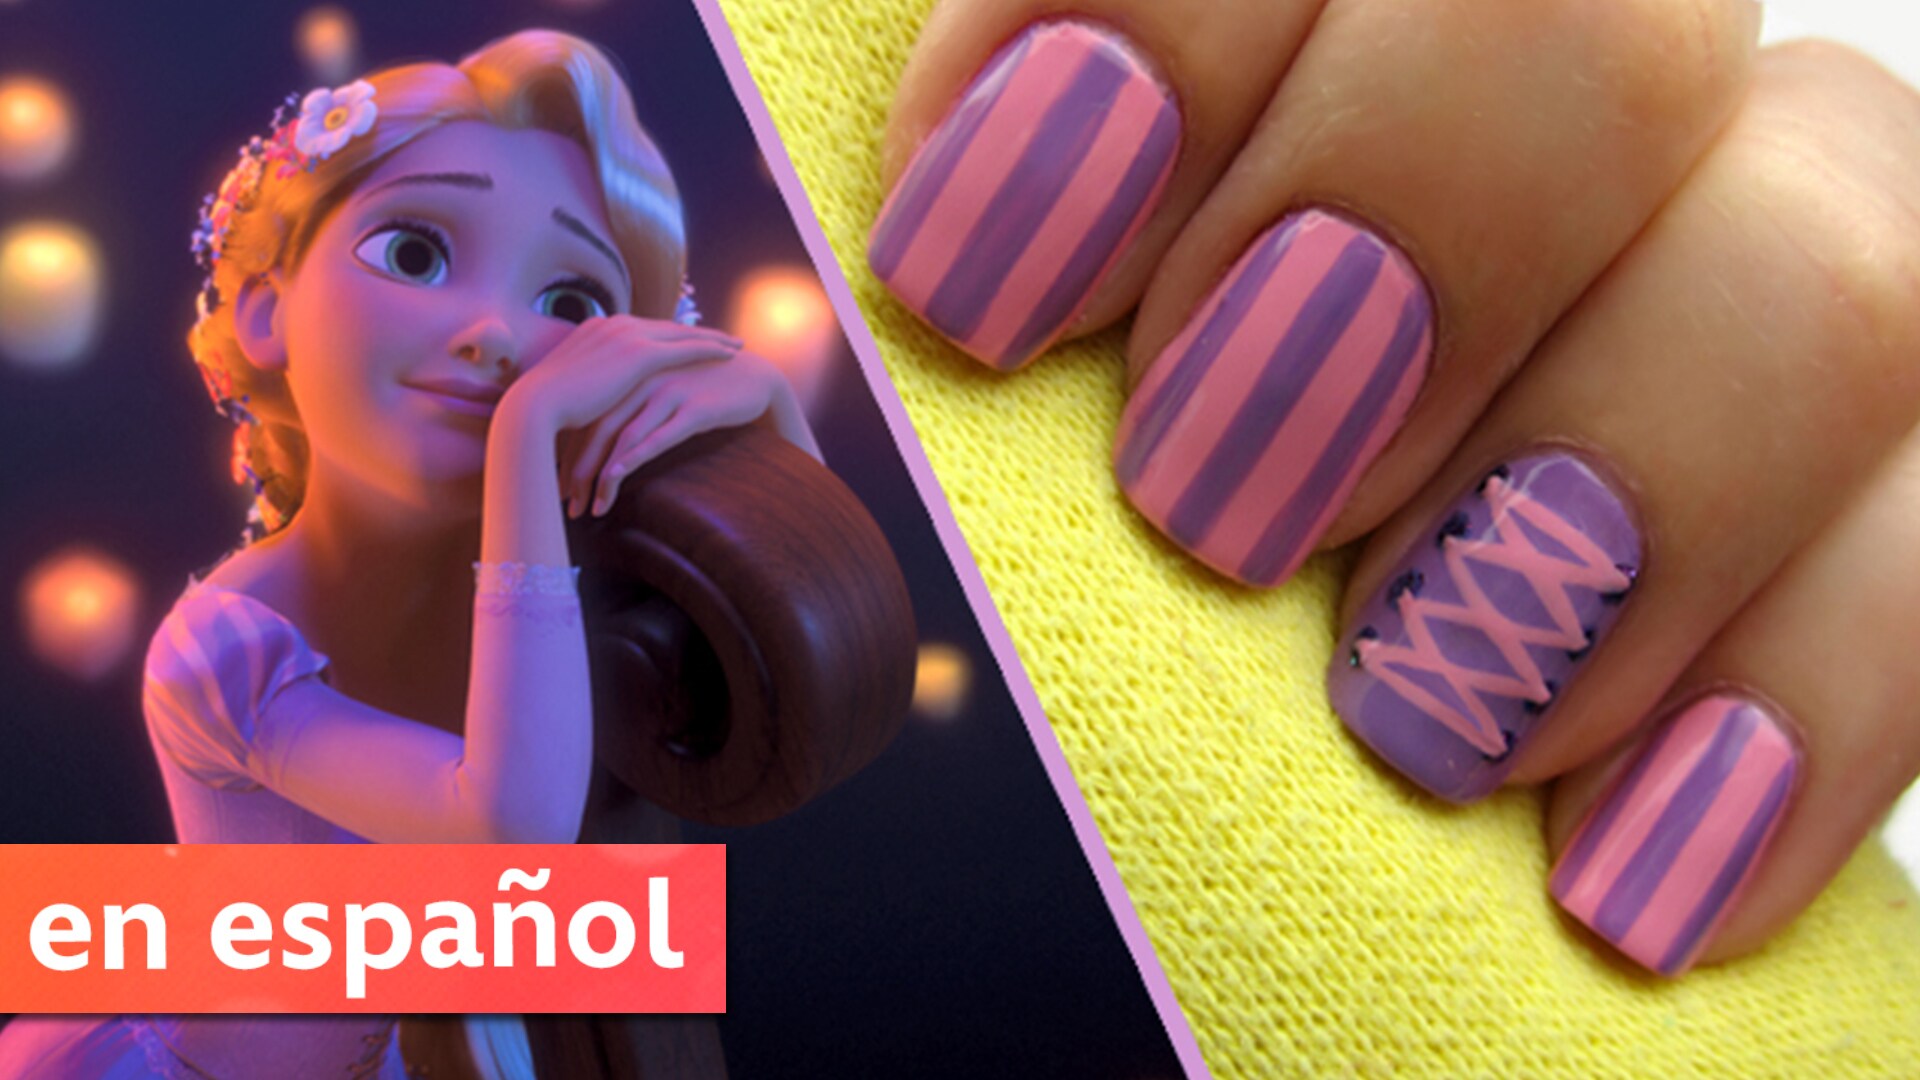 Diseño de uñas basado en Rapunzel de Enredados (Tangled)| Una exclusiva de CutePolish para Disney